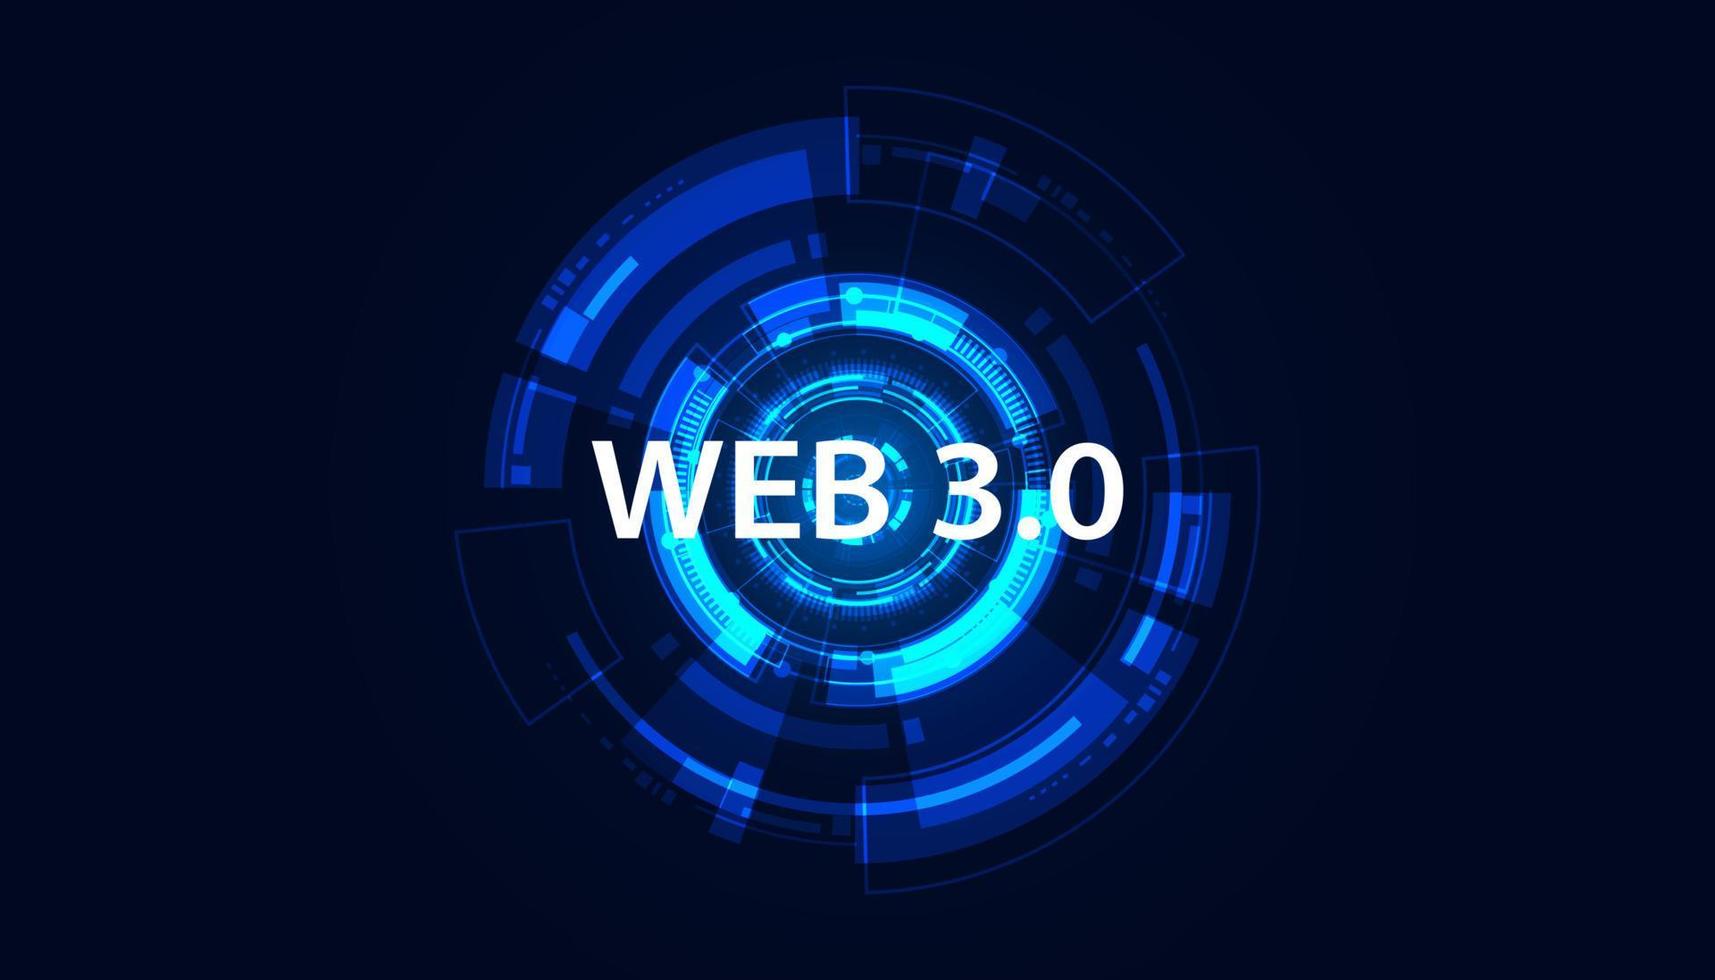 tecnología abstracta círculo concepto futurista digital web 3.0 web semántica e inteligencia artificial acceder a servicios de red información personal trabajar en una red descentralizada y blockchain vector